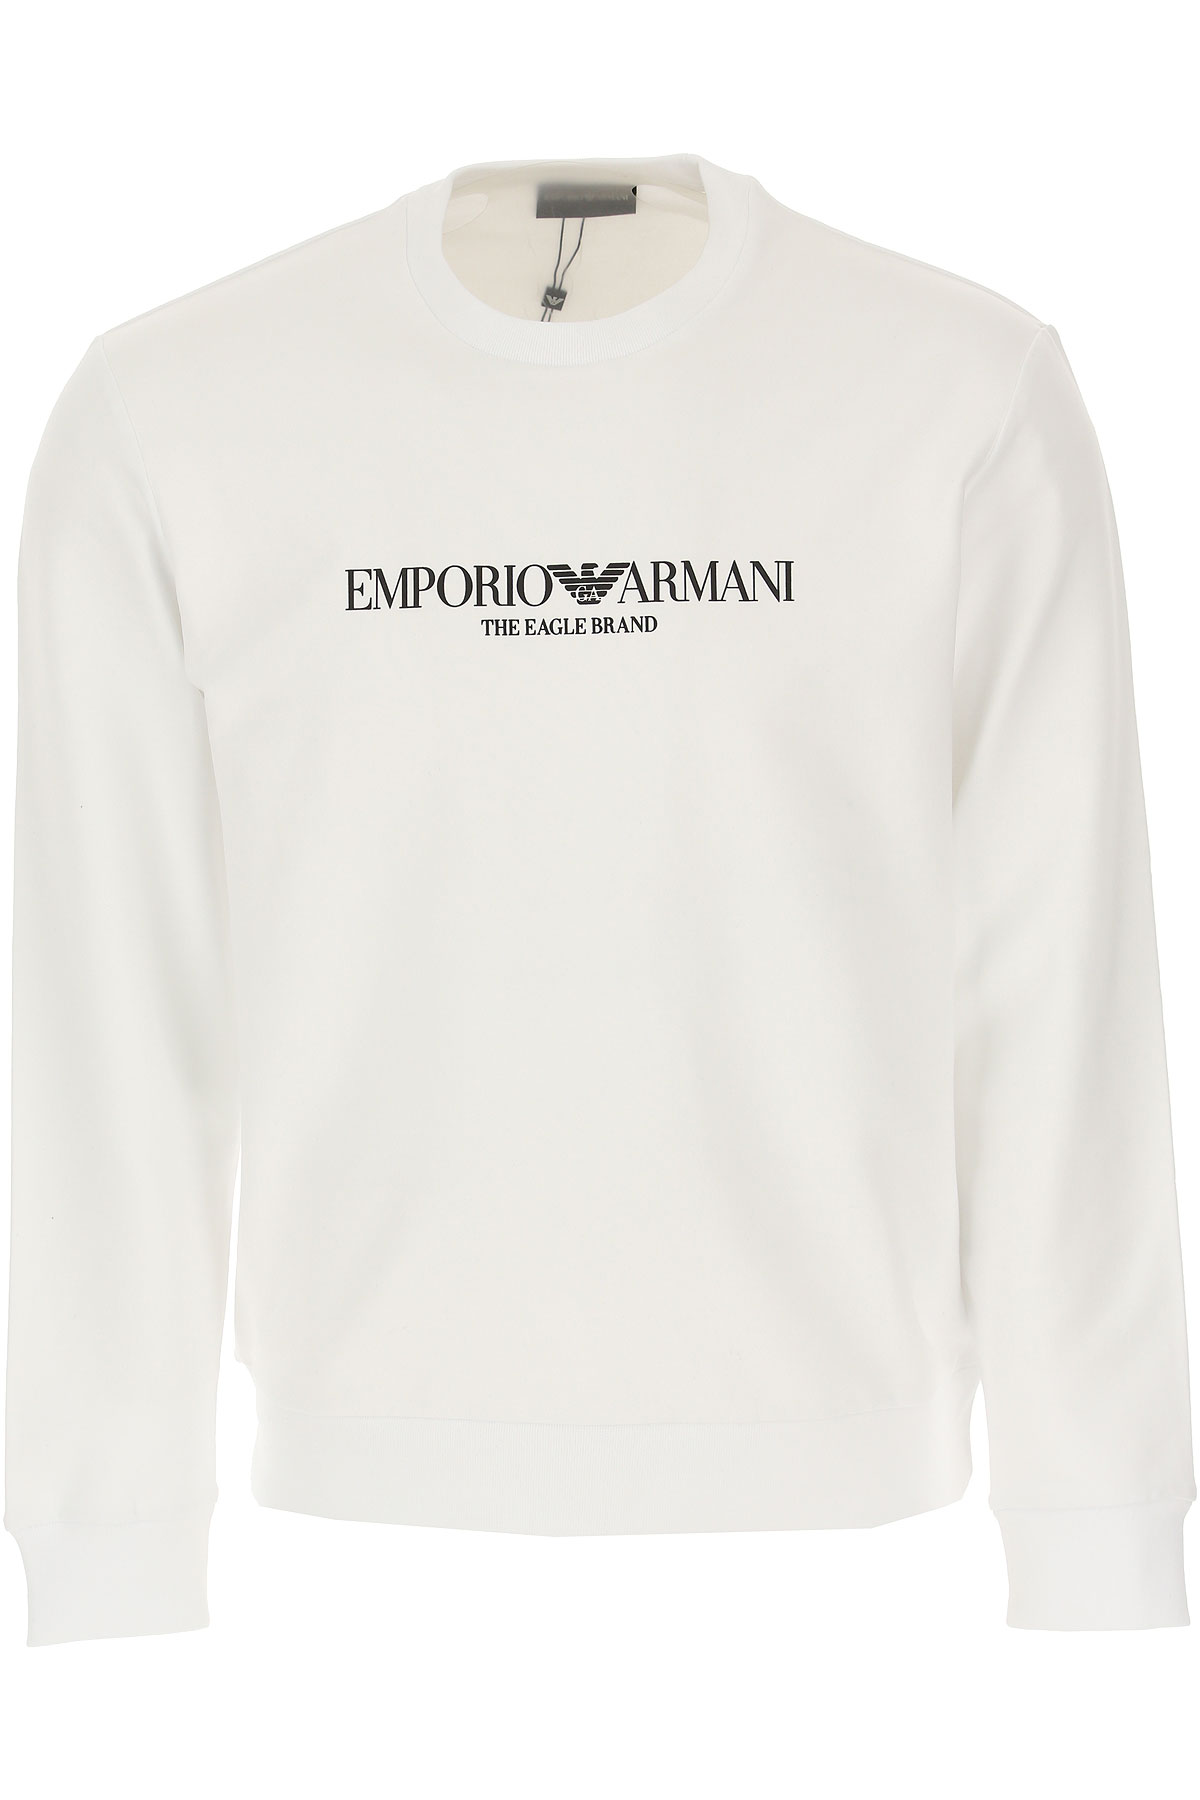 Emporio Armani Sweatshirt für Herren, Kapuzenpulli, Hoodie, Sweats Günstig im Sale, Weiss, Baumwolle, 2017, XL XXL